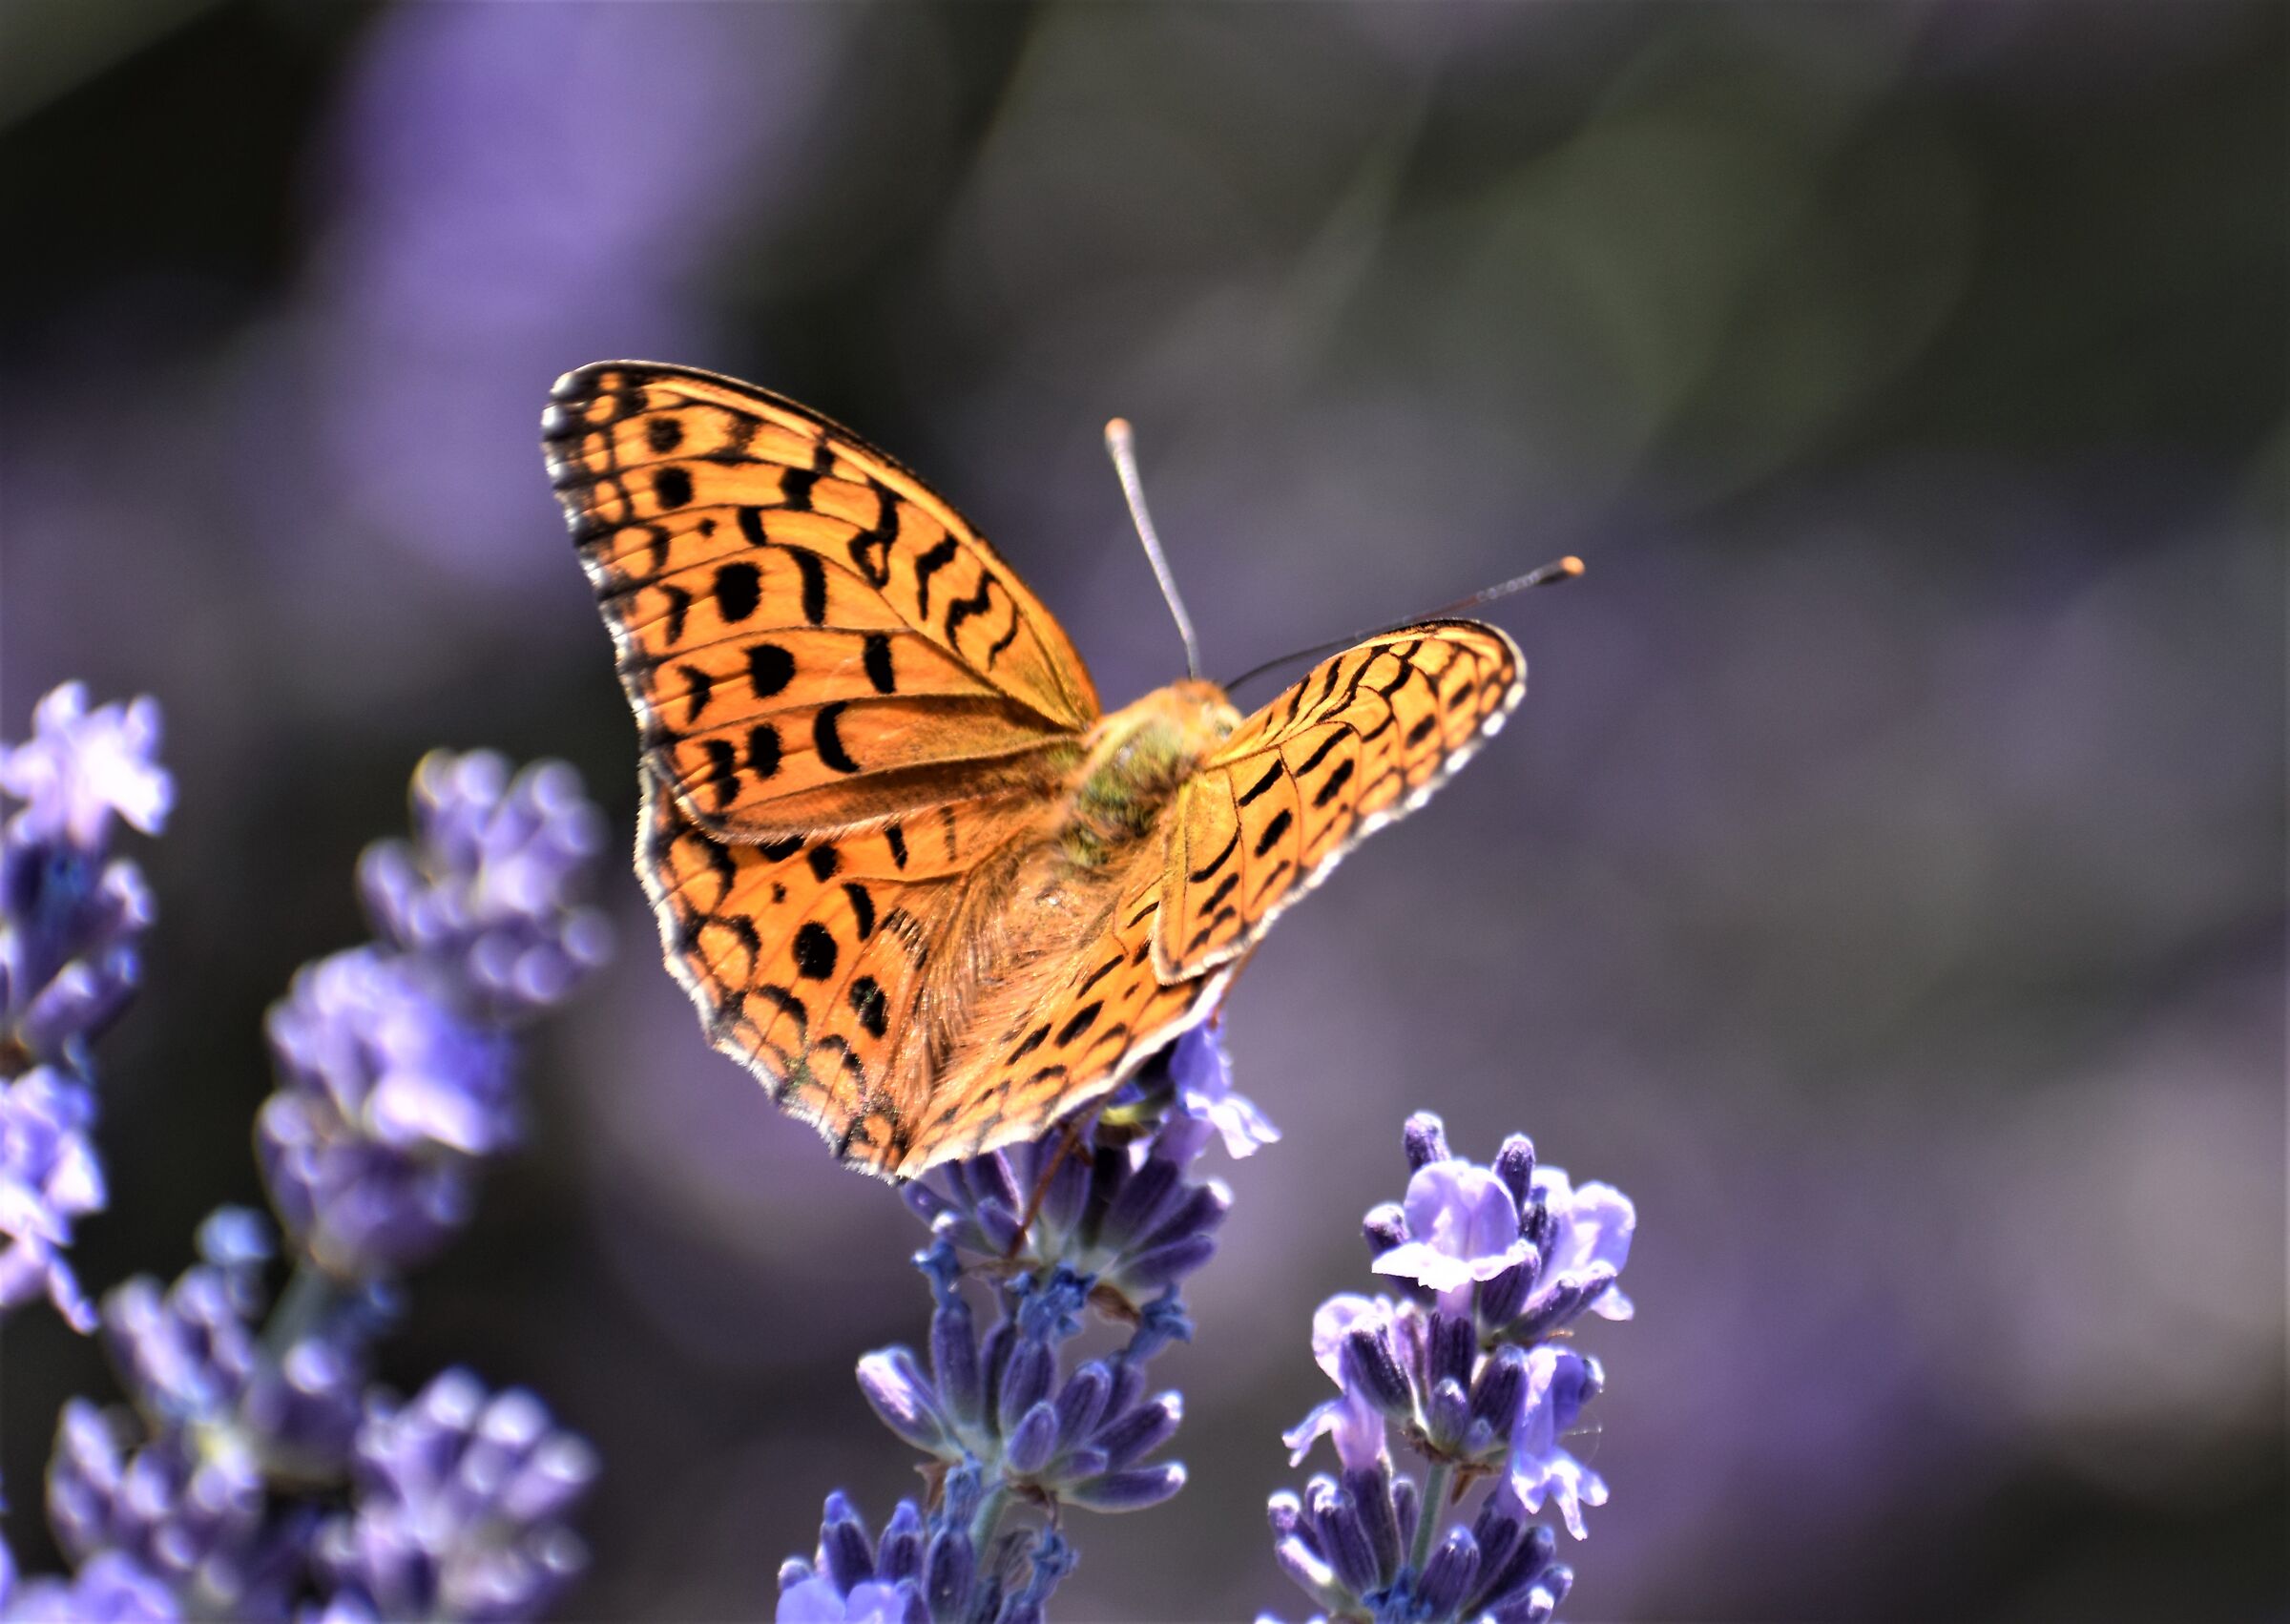 Butterfly on lavender field...